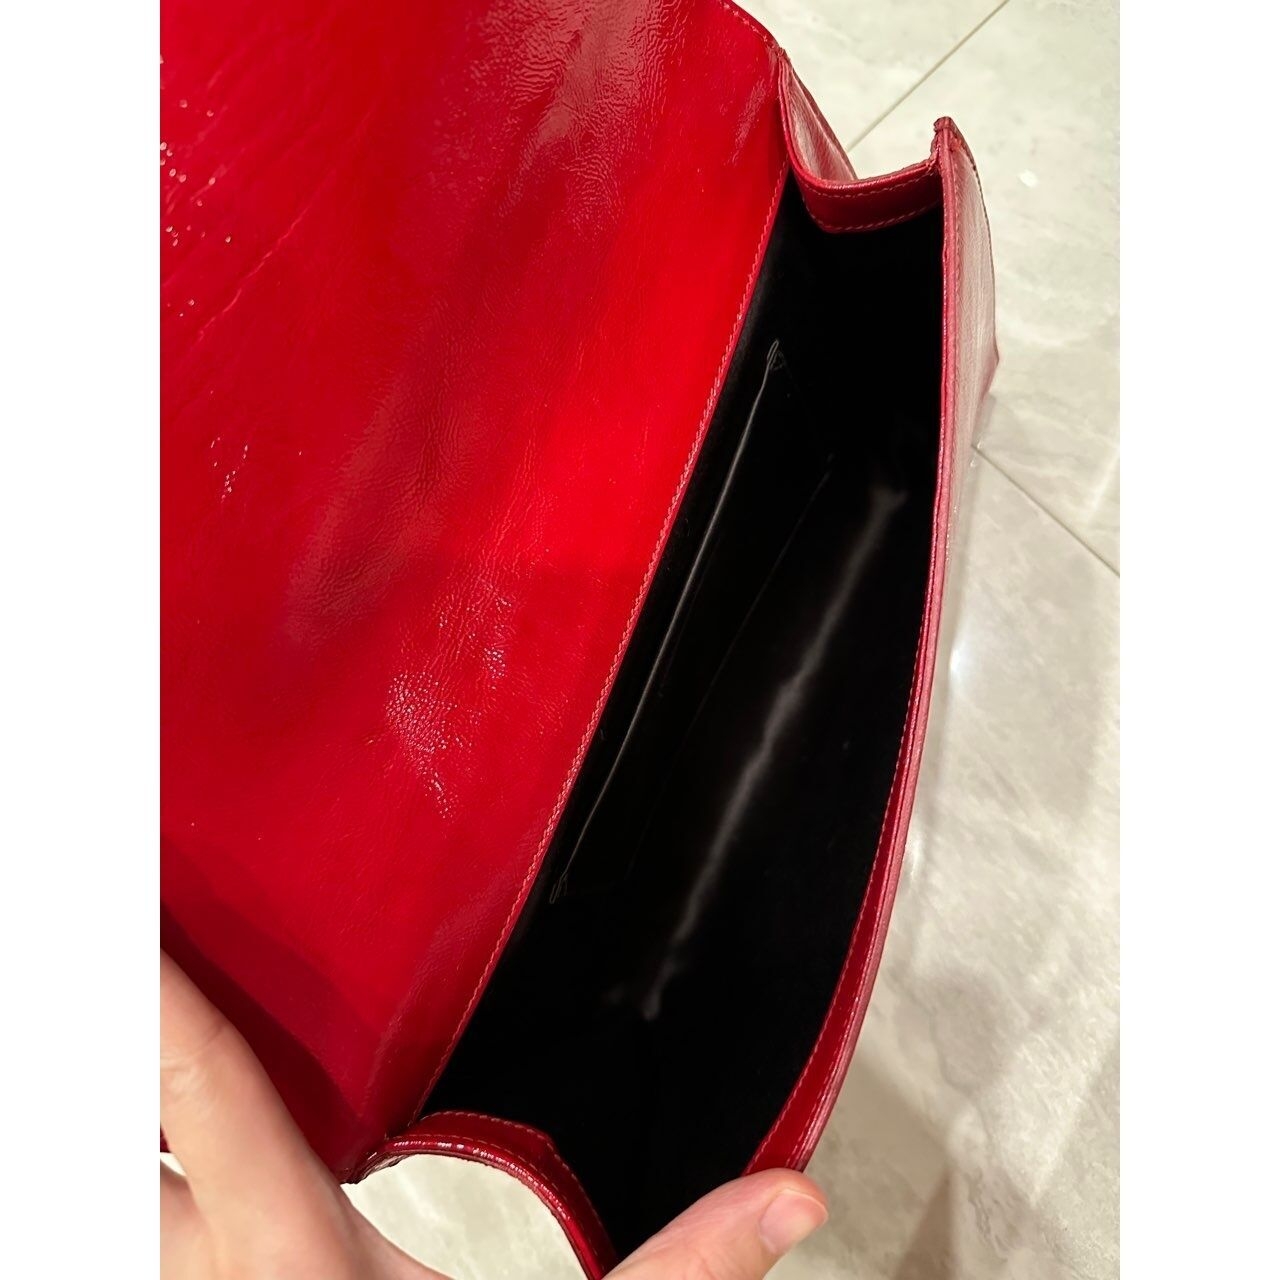 Yves Saint Laurent Monogram Belle De Jour Large Red Textured Patent Leather Clutch